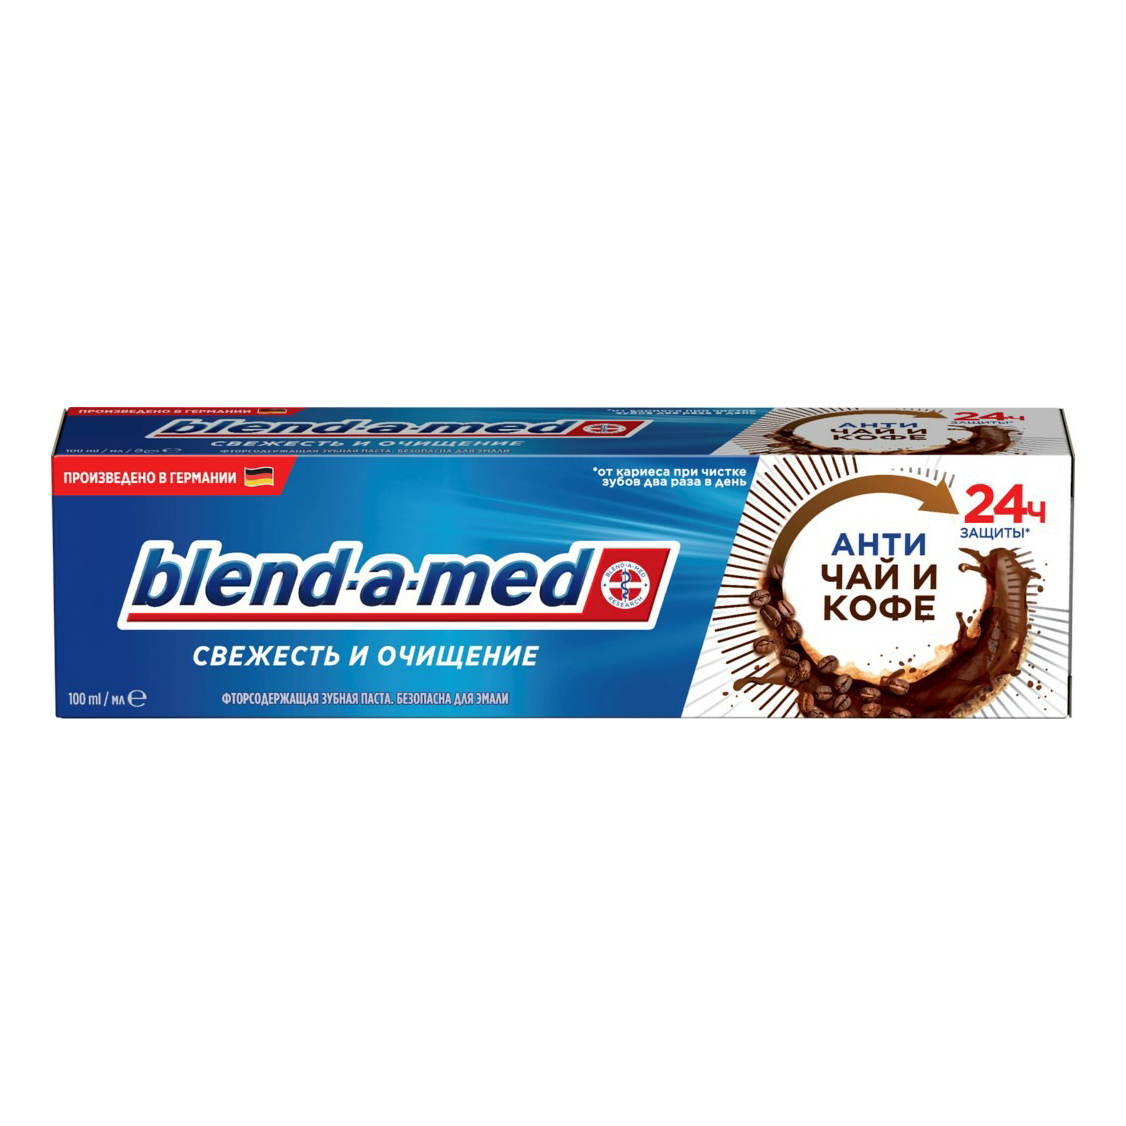 Зубная паста Blend-a-med Свежесть и очищение Античай и кофе 130 г